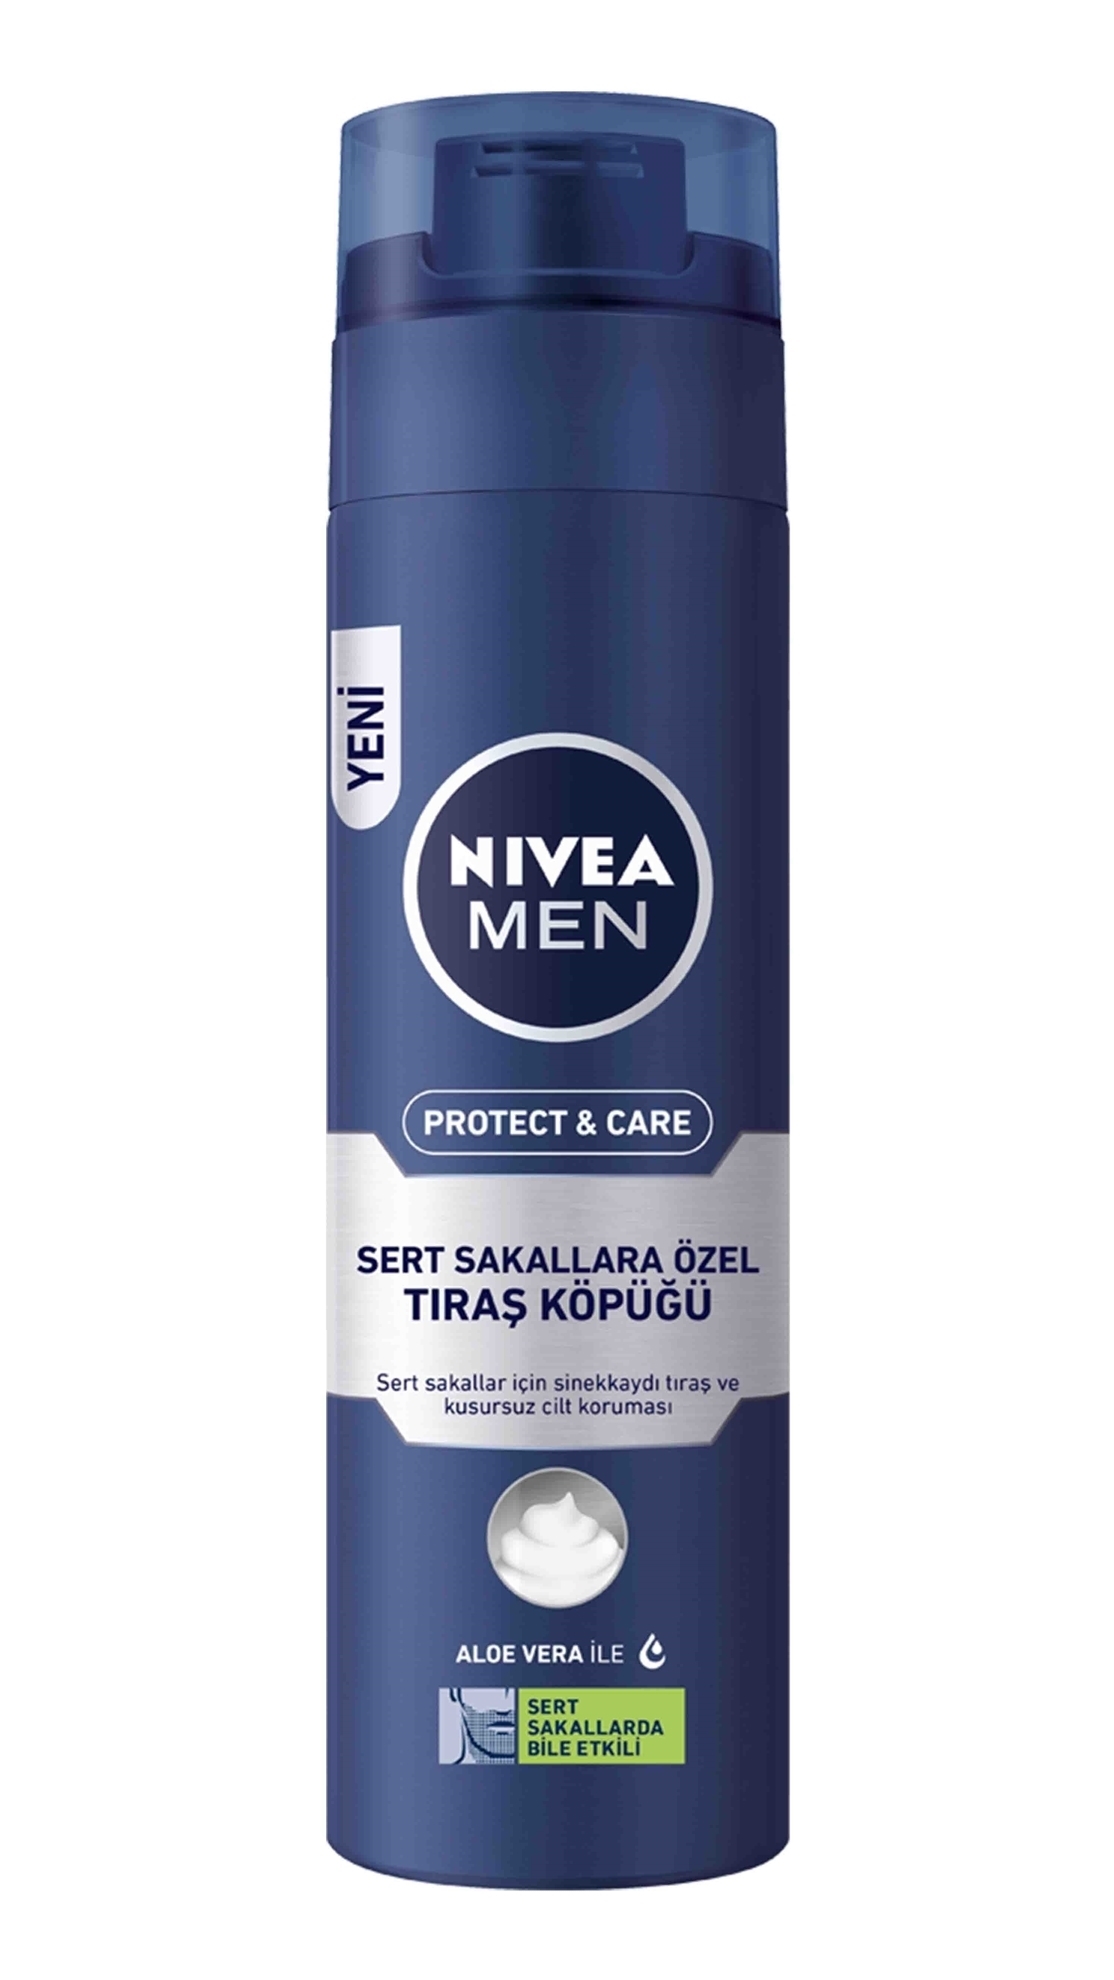 Nivea Men Protect & Care Sert Sakallara Özel Tıraş Köpüğü 200 ML